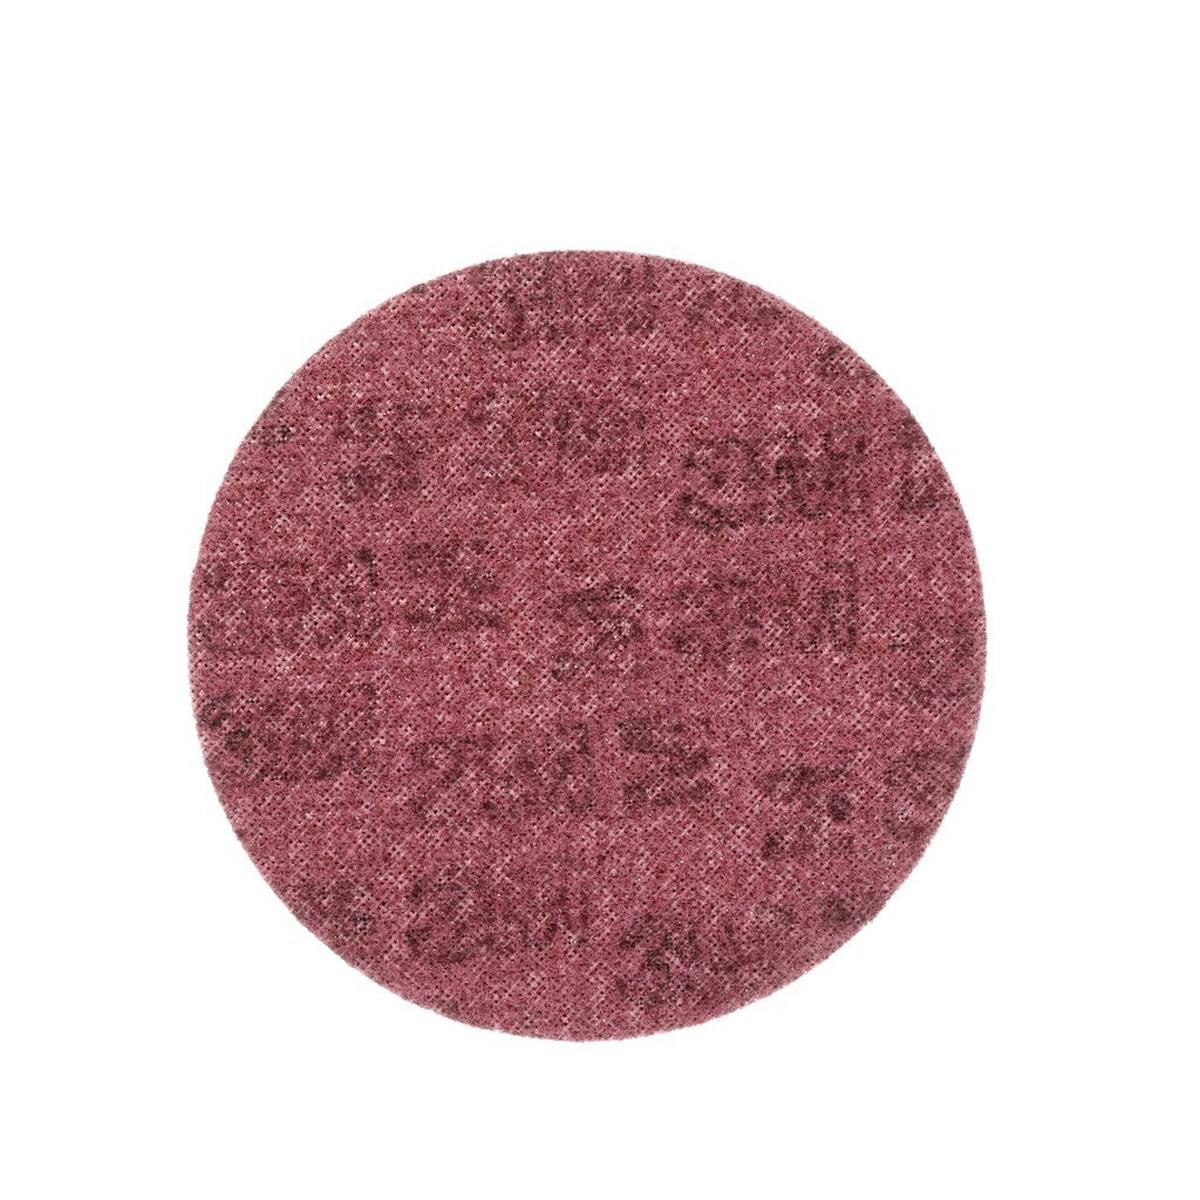 3M Scotch-Brite disco in tessuto non tessuto SC-DH senza centratura, rosso, 125 mm, A, medio #65336